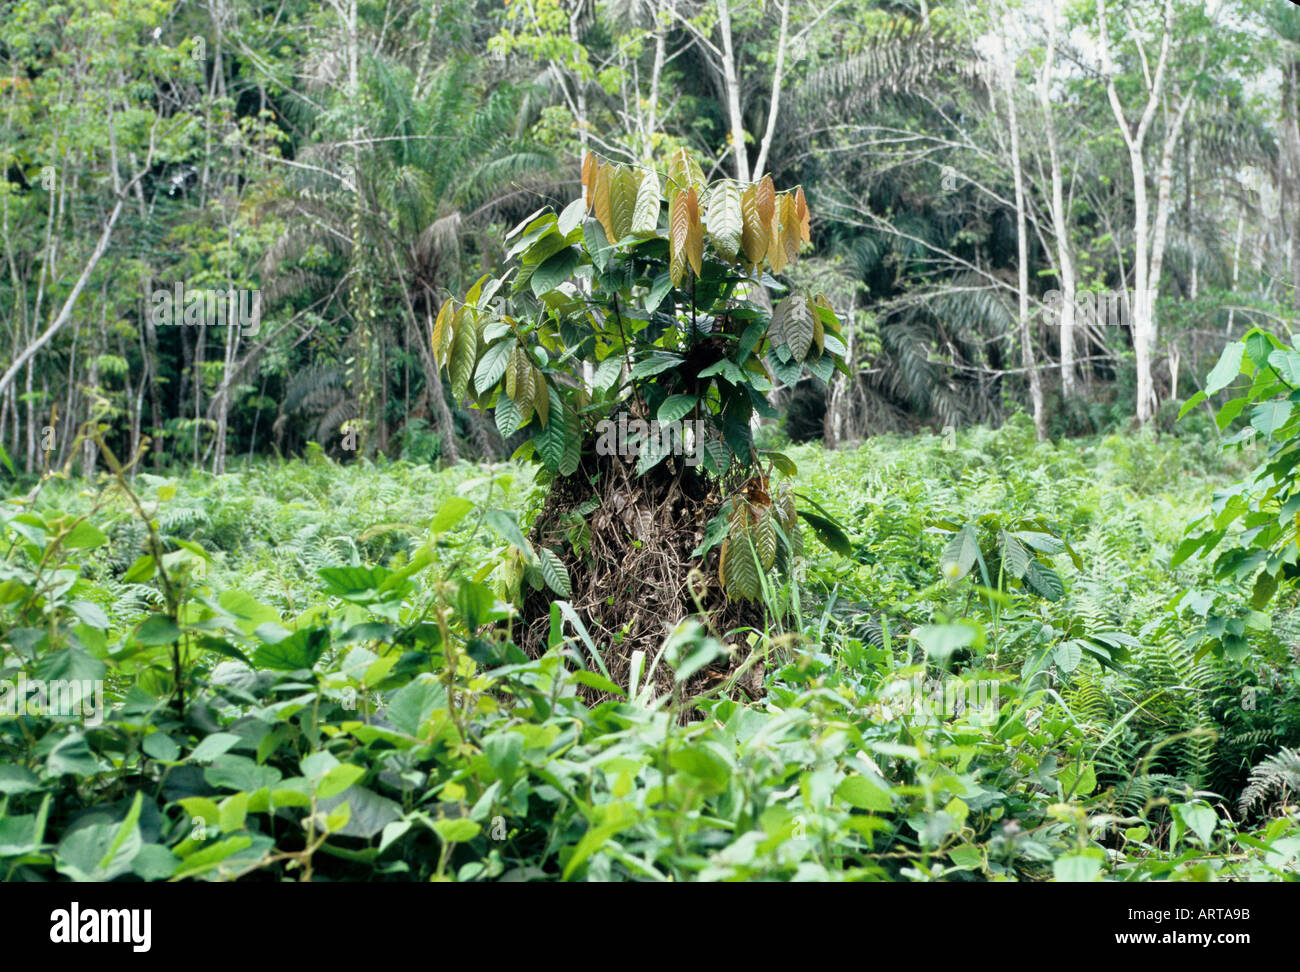 Benin s wilderness offers a whole pharmacy of plants In Benins Vegetation lassen sich zahlreiche Heilpflanzen finden  Stock Photo